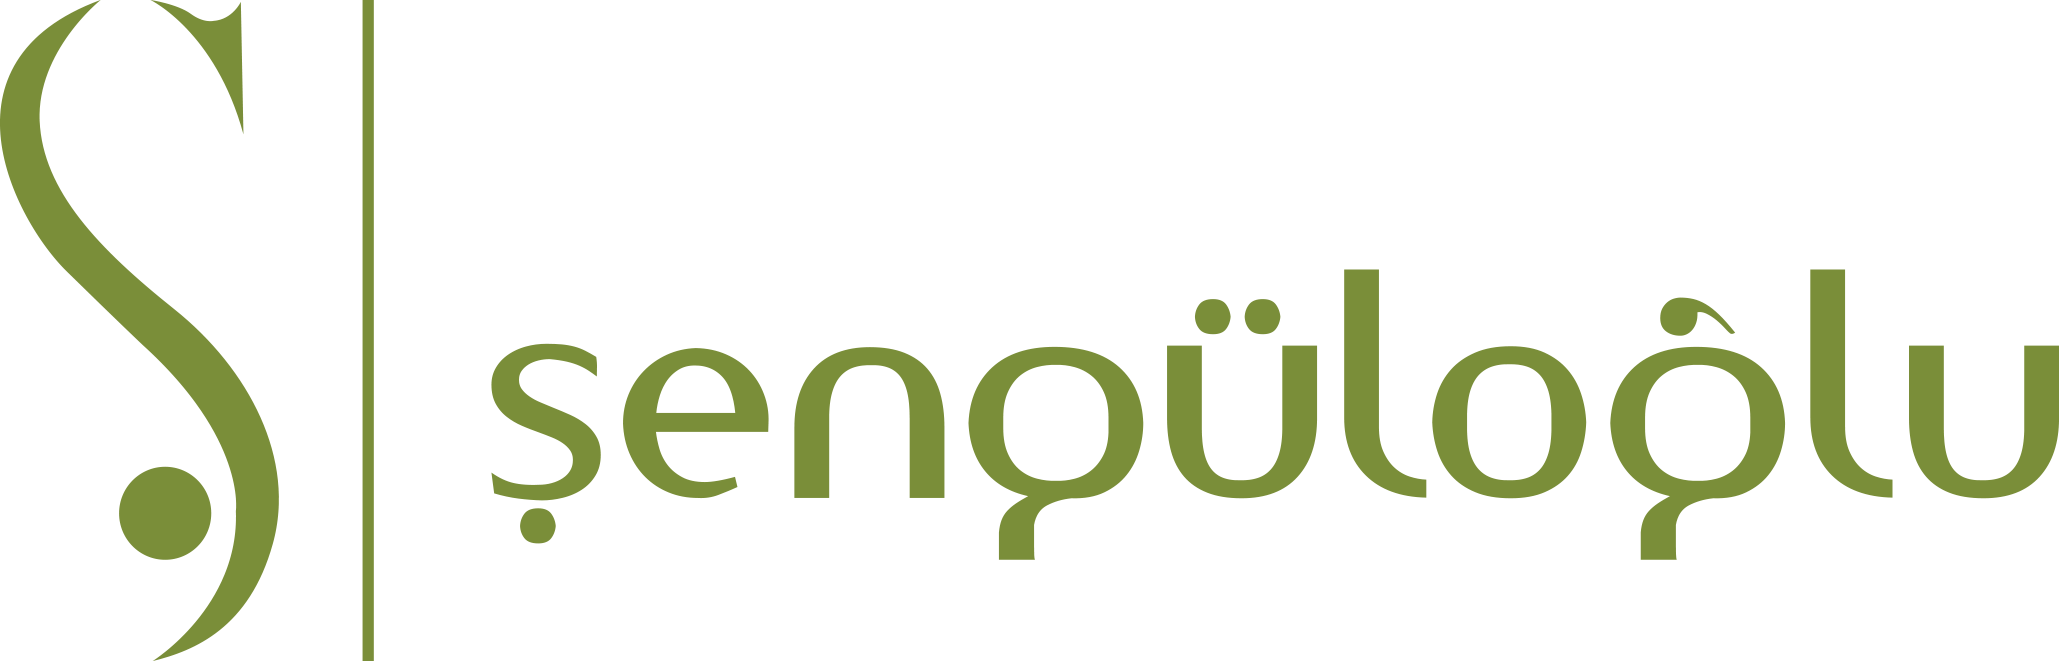 senguloglu-logo